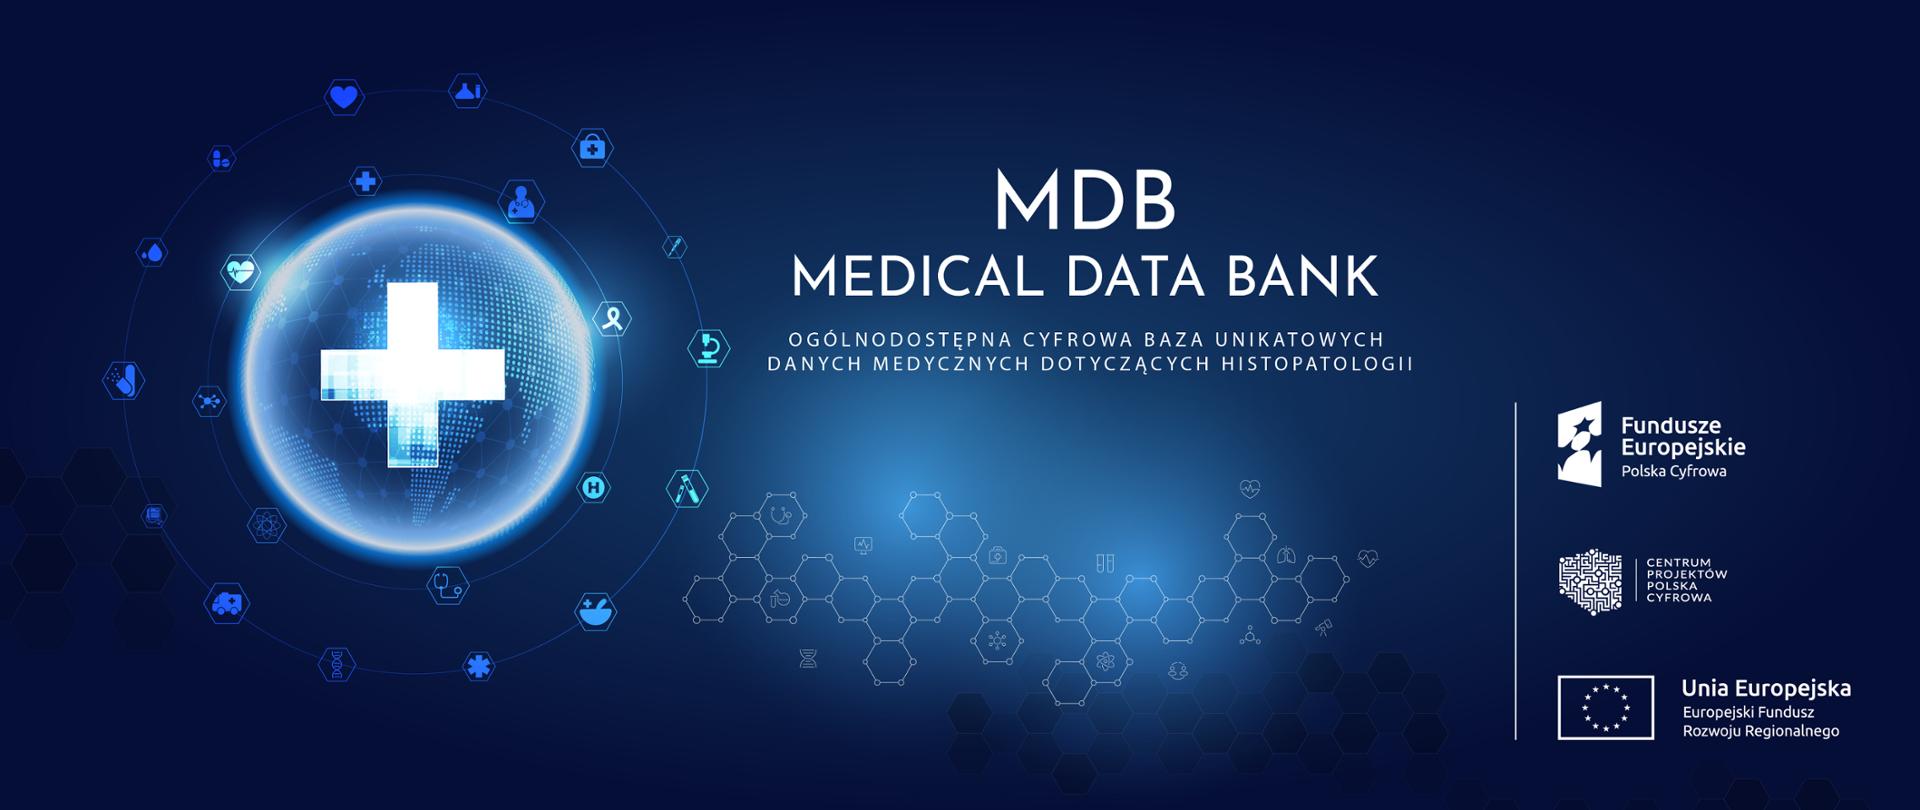 Wirtualna Platforma Danych Medycznych Oraz Nowoczesnej Diagnostyki „mdb-medical Data Bank